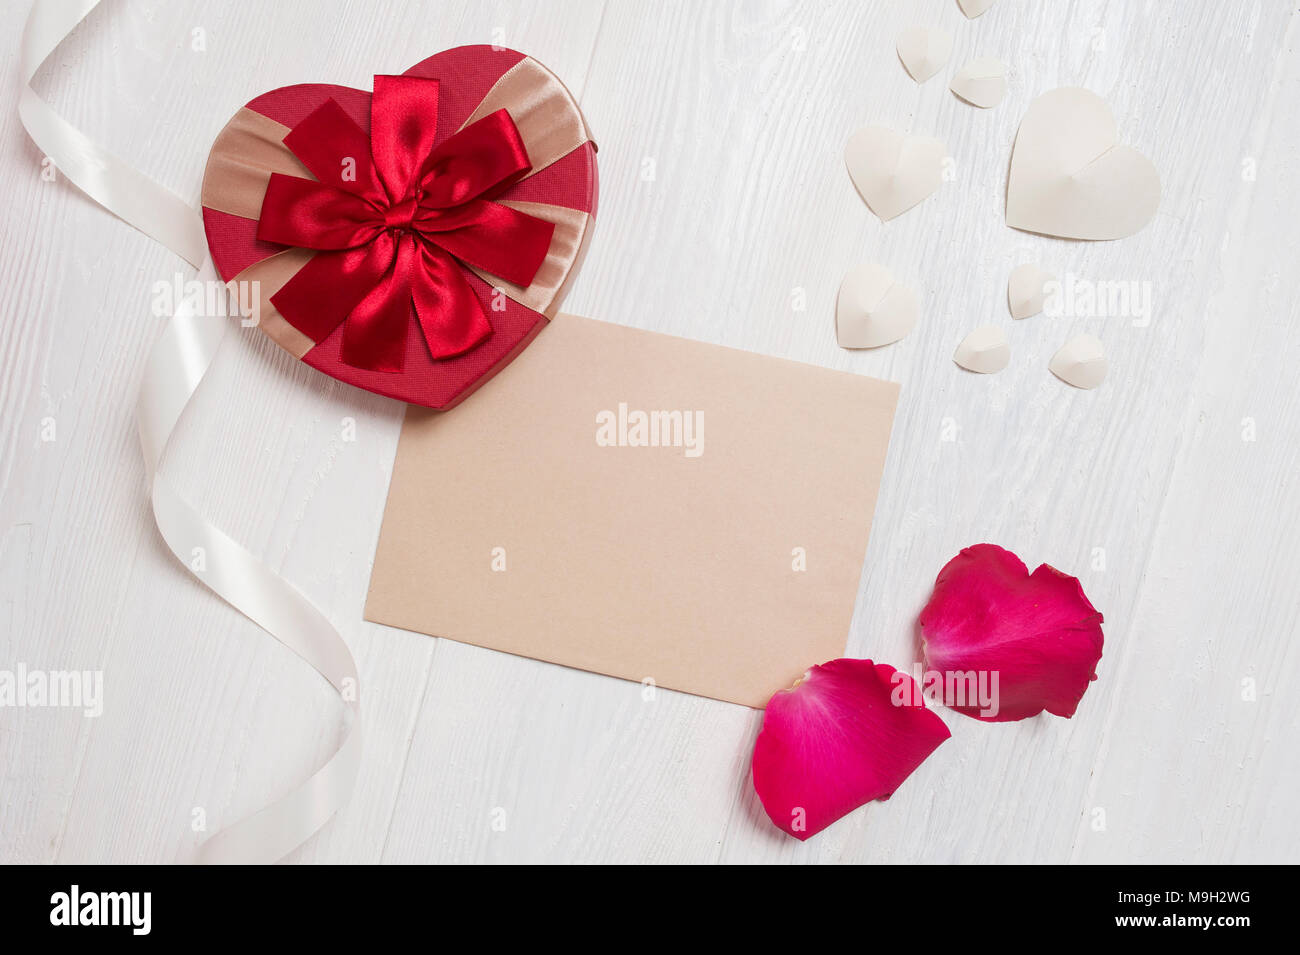 Lettre avec un cadeau maquette sous la forme d'un coeur et d'un les pétales de roses. carte de souhaits pour la Saint-Valentin avec place pour votre texte. Mise à plat, haut voir photo maquette Banque D'Images